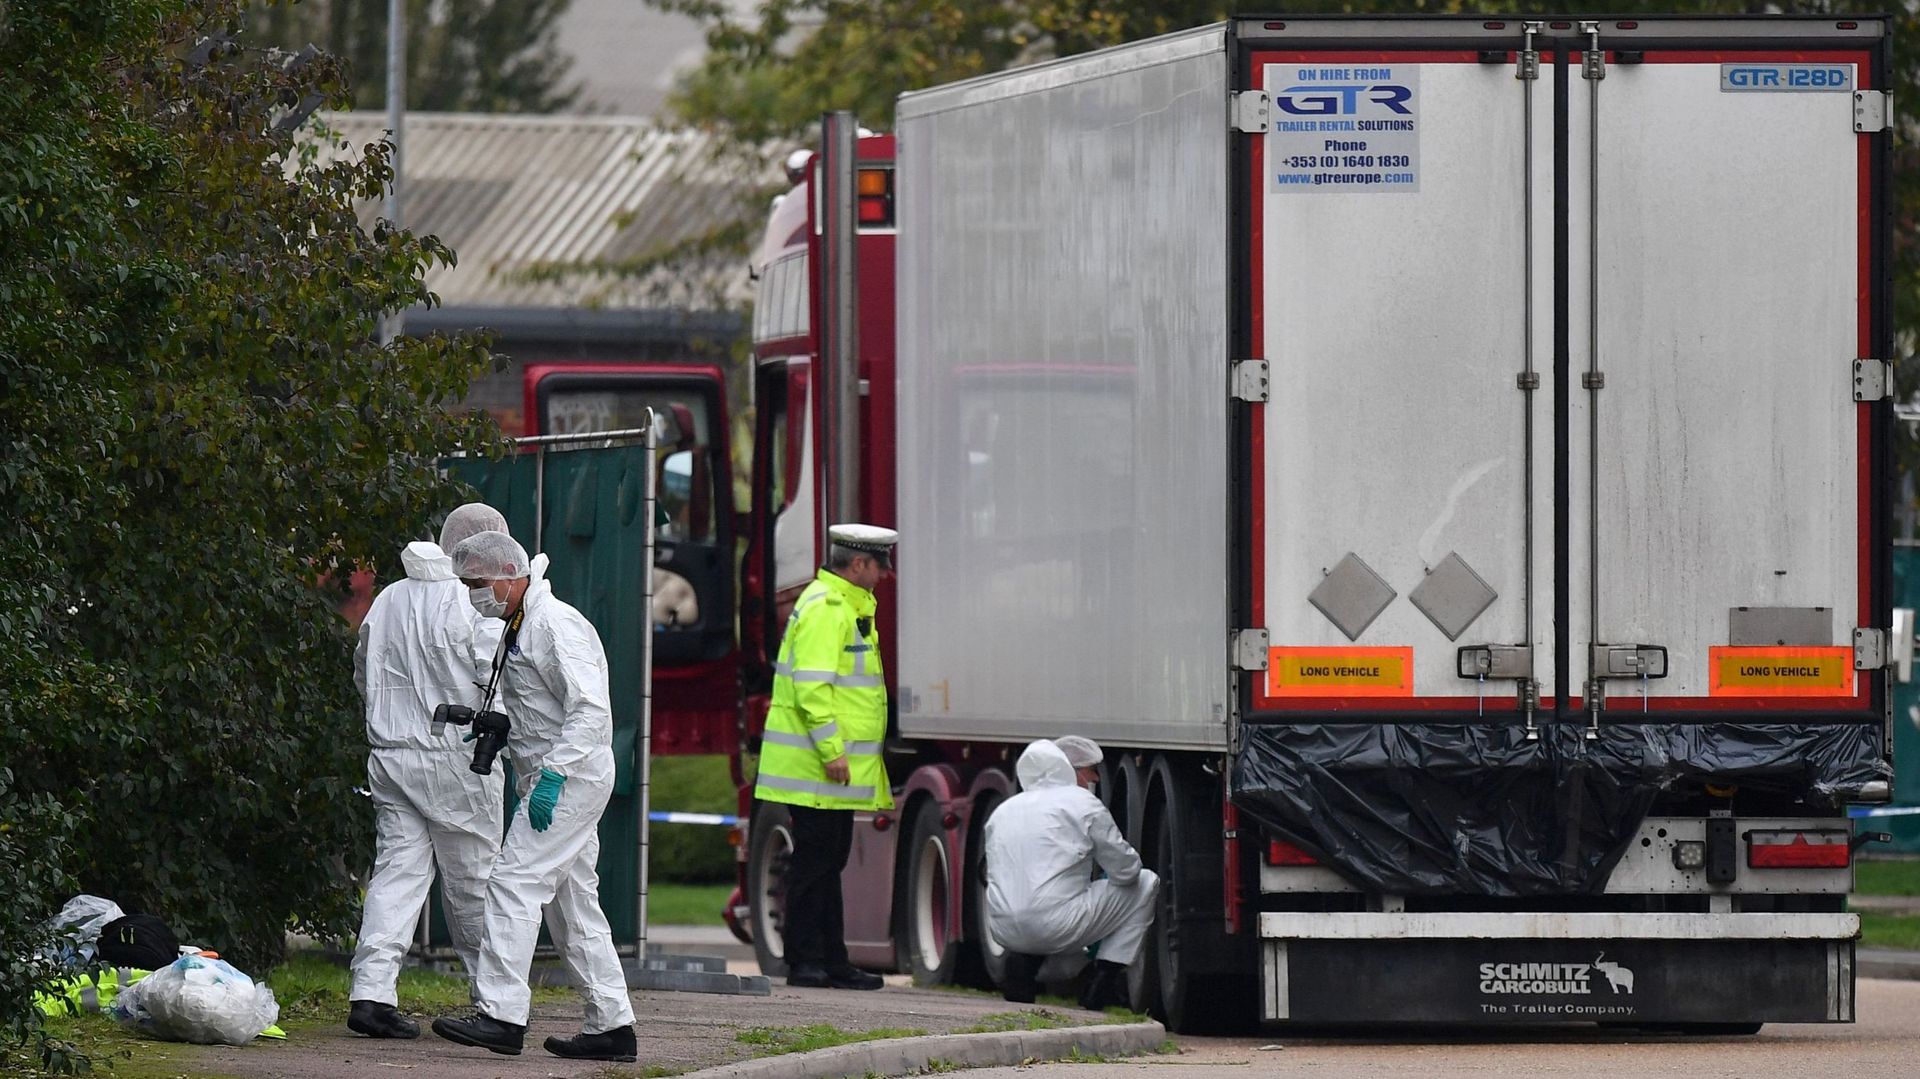 En 2019, la police britannique examine le camion où ont été trouvé les corps